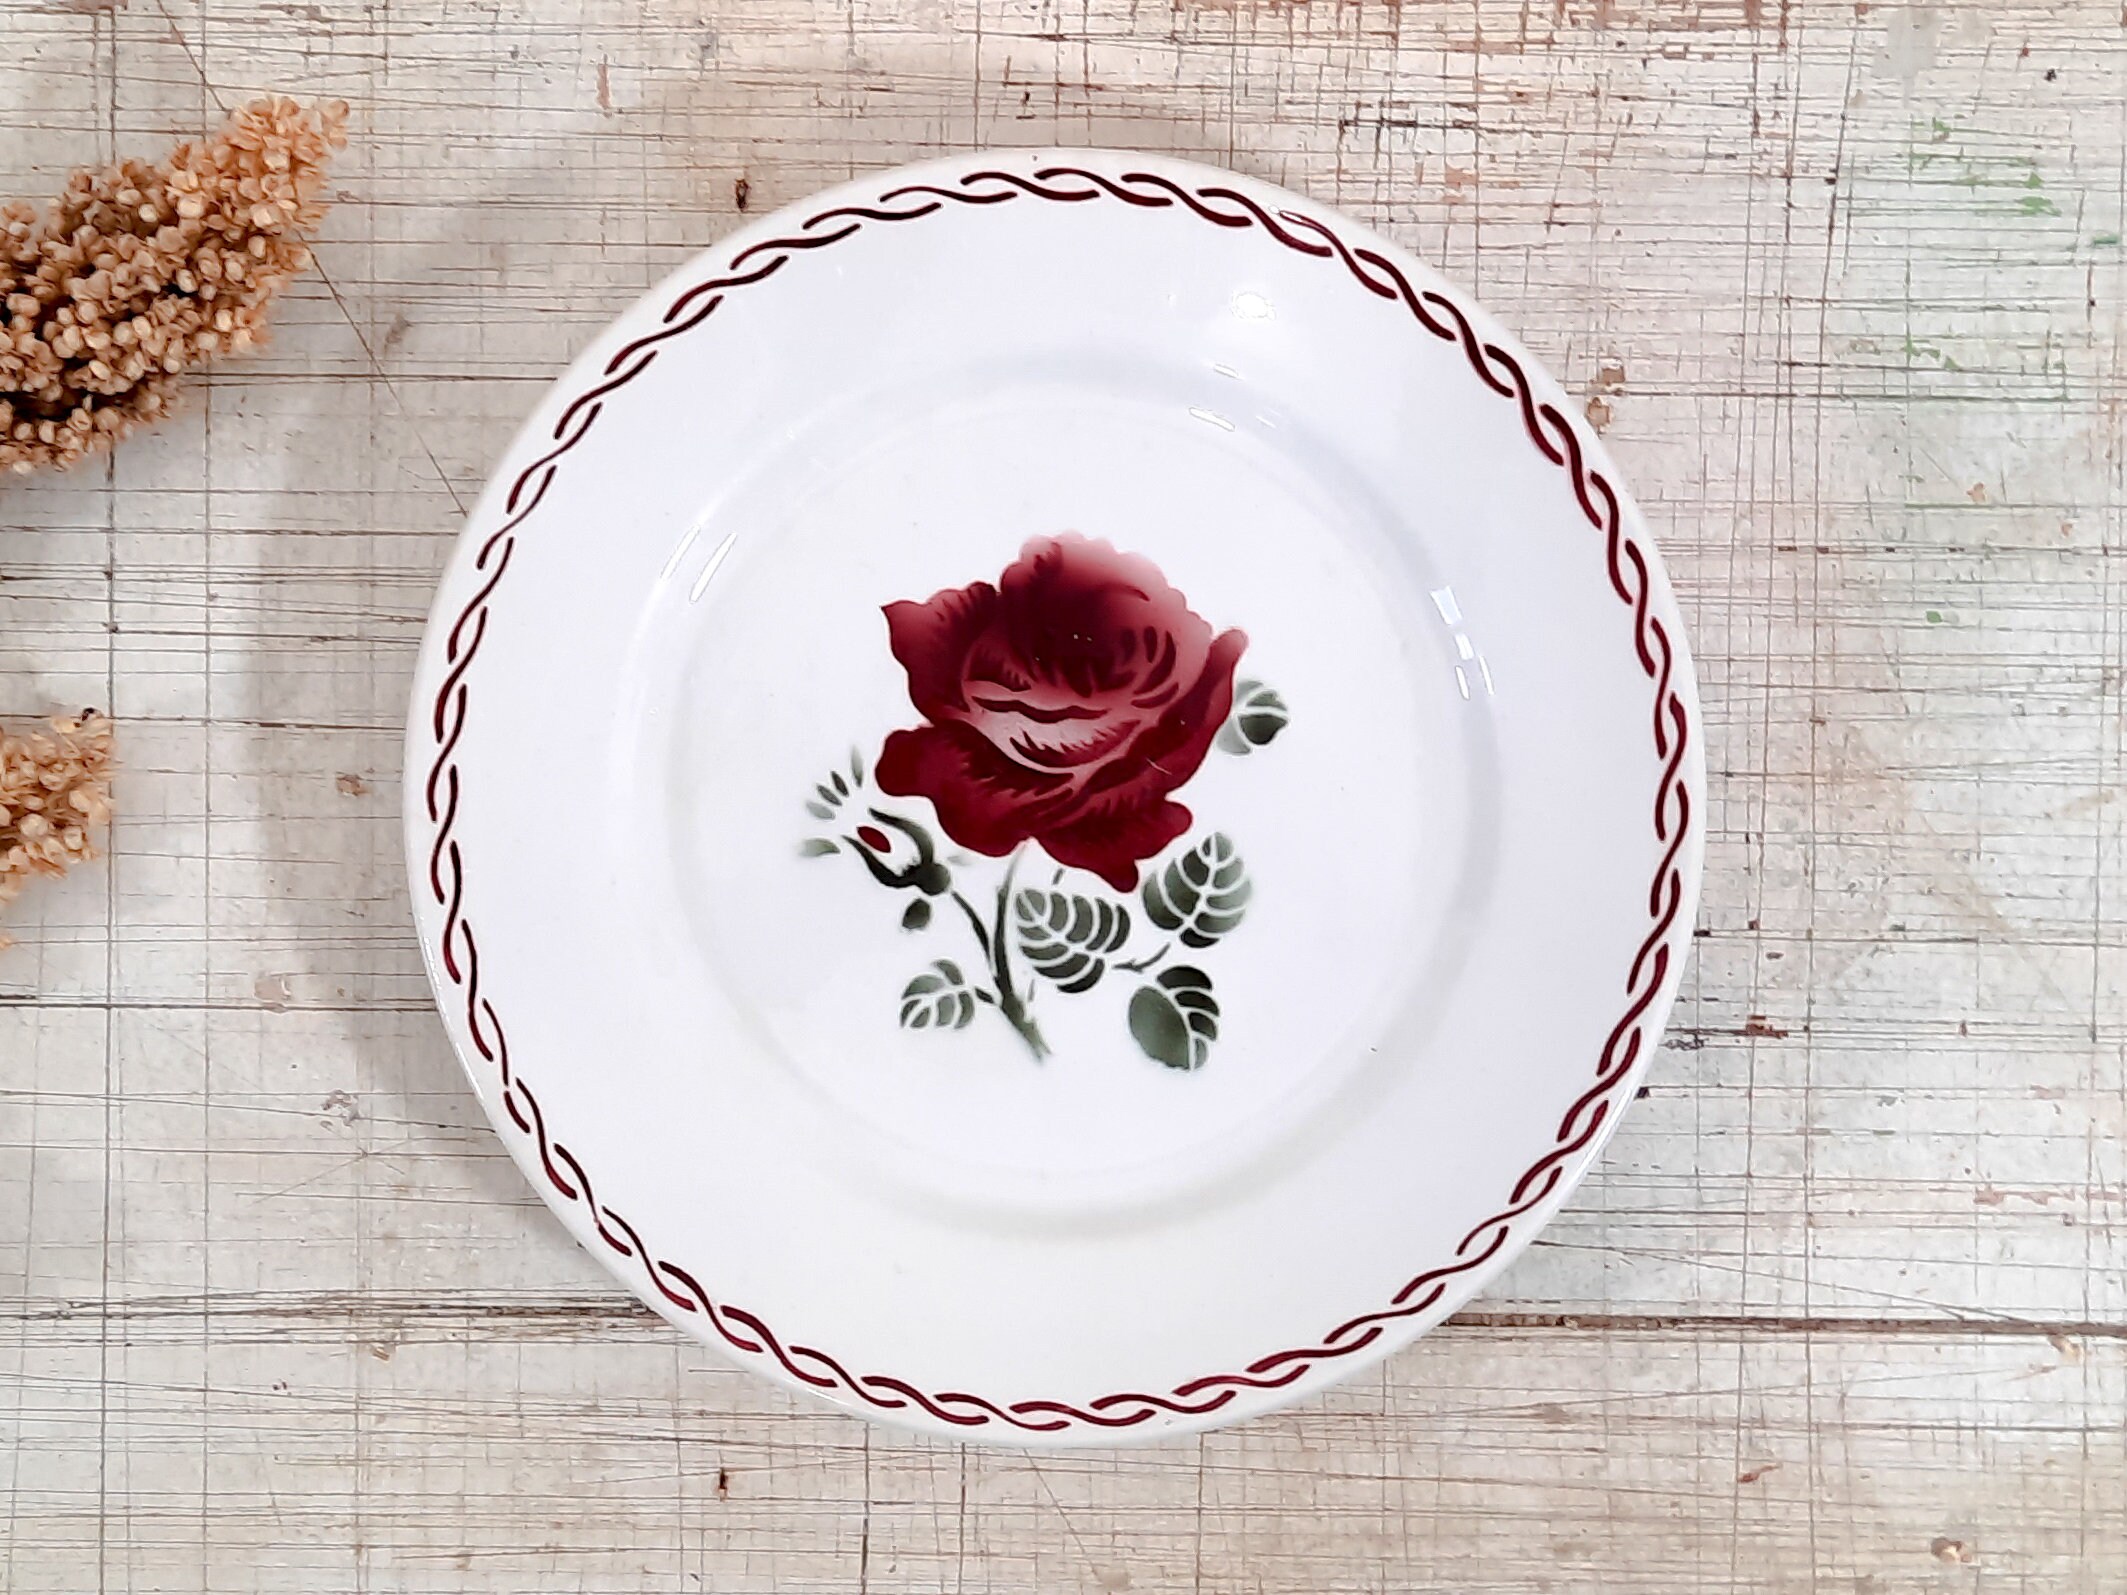 Français Vintage Ironstone Red Rose Plate de Badonviller France China 1900S, Germaine, Floral France